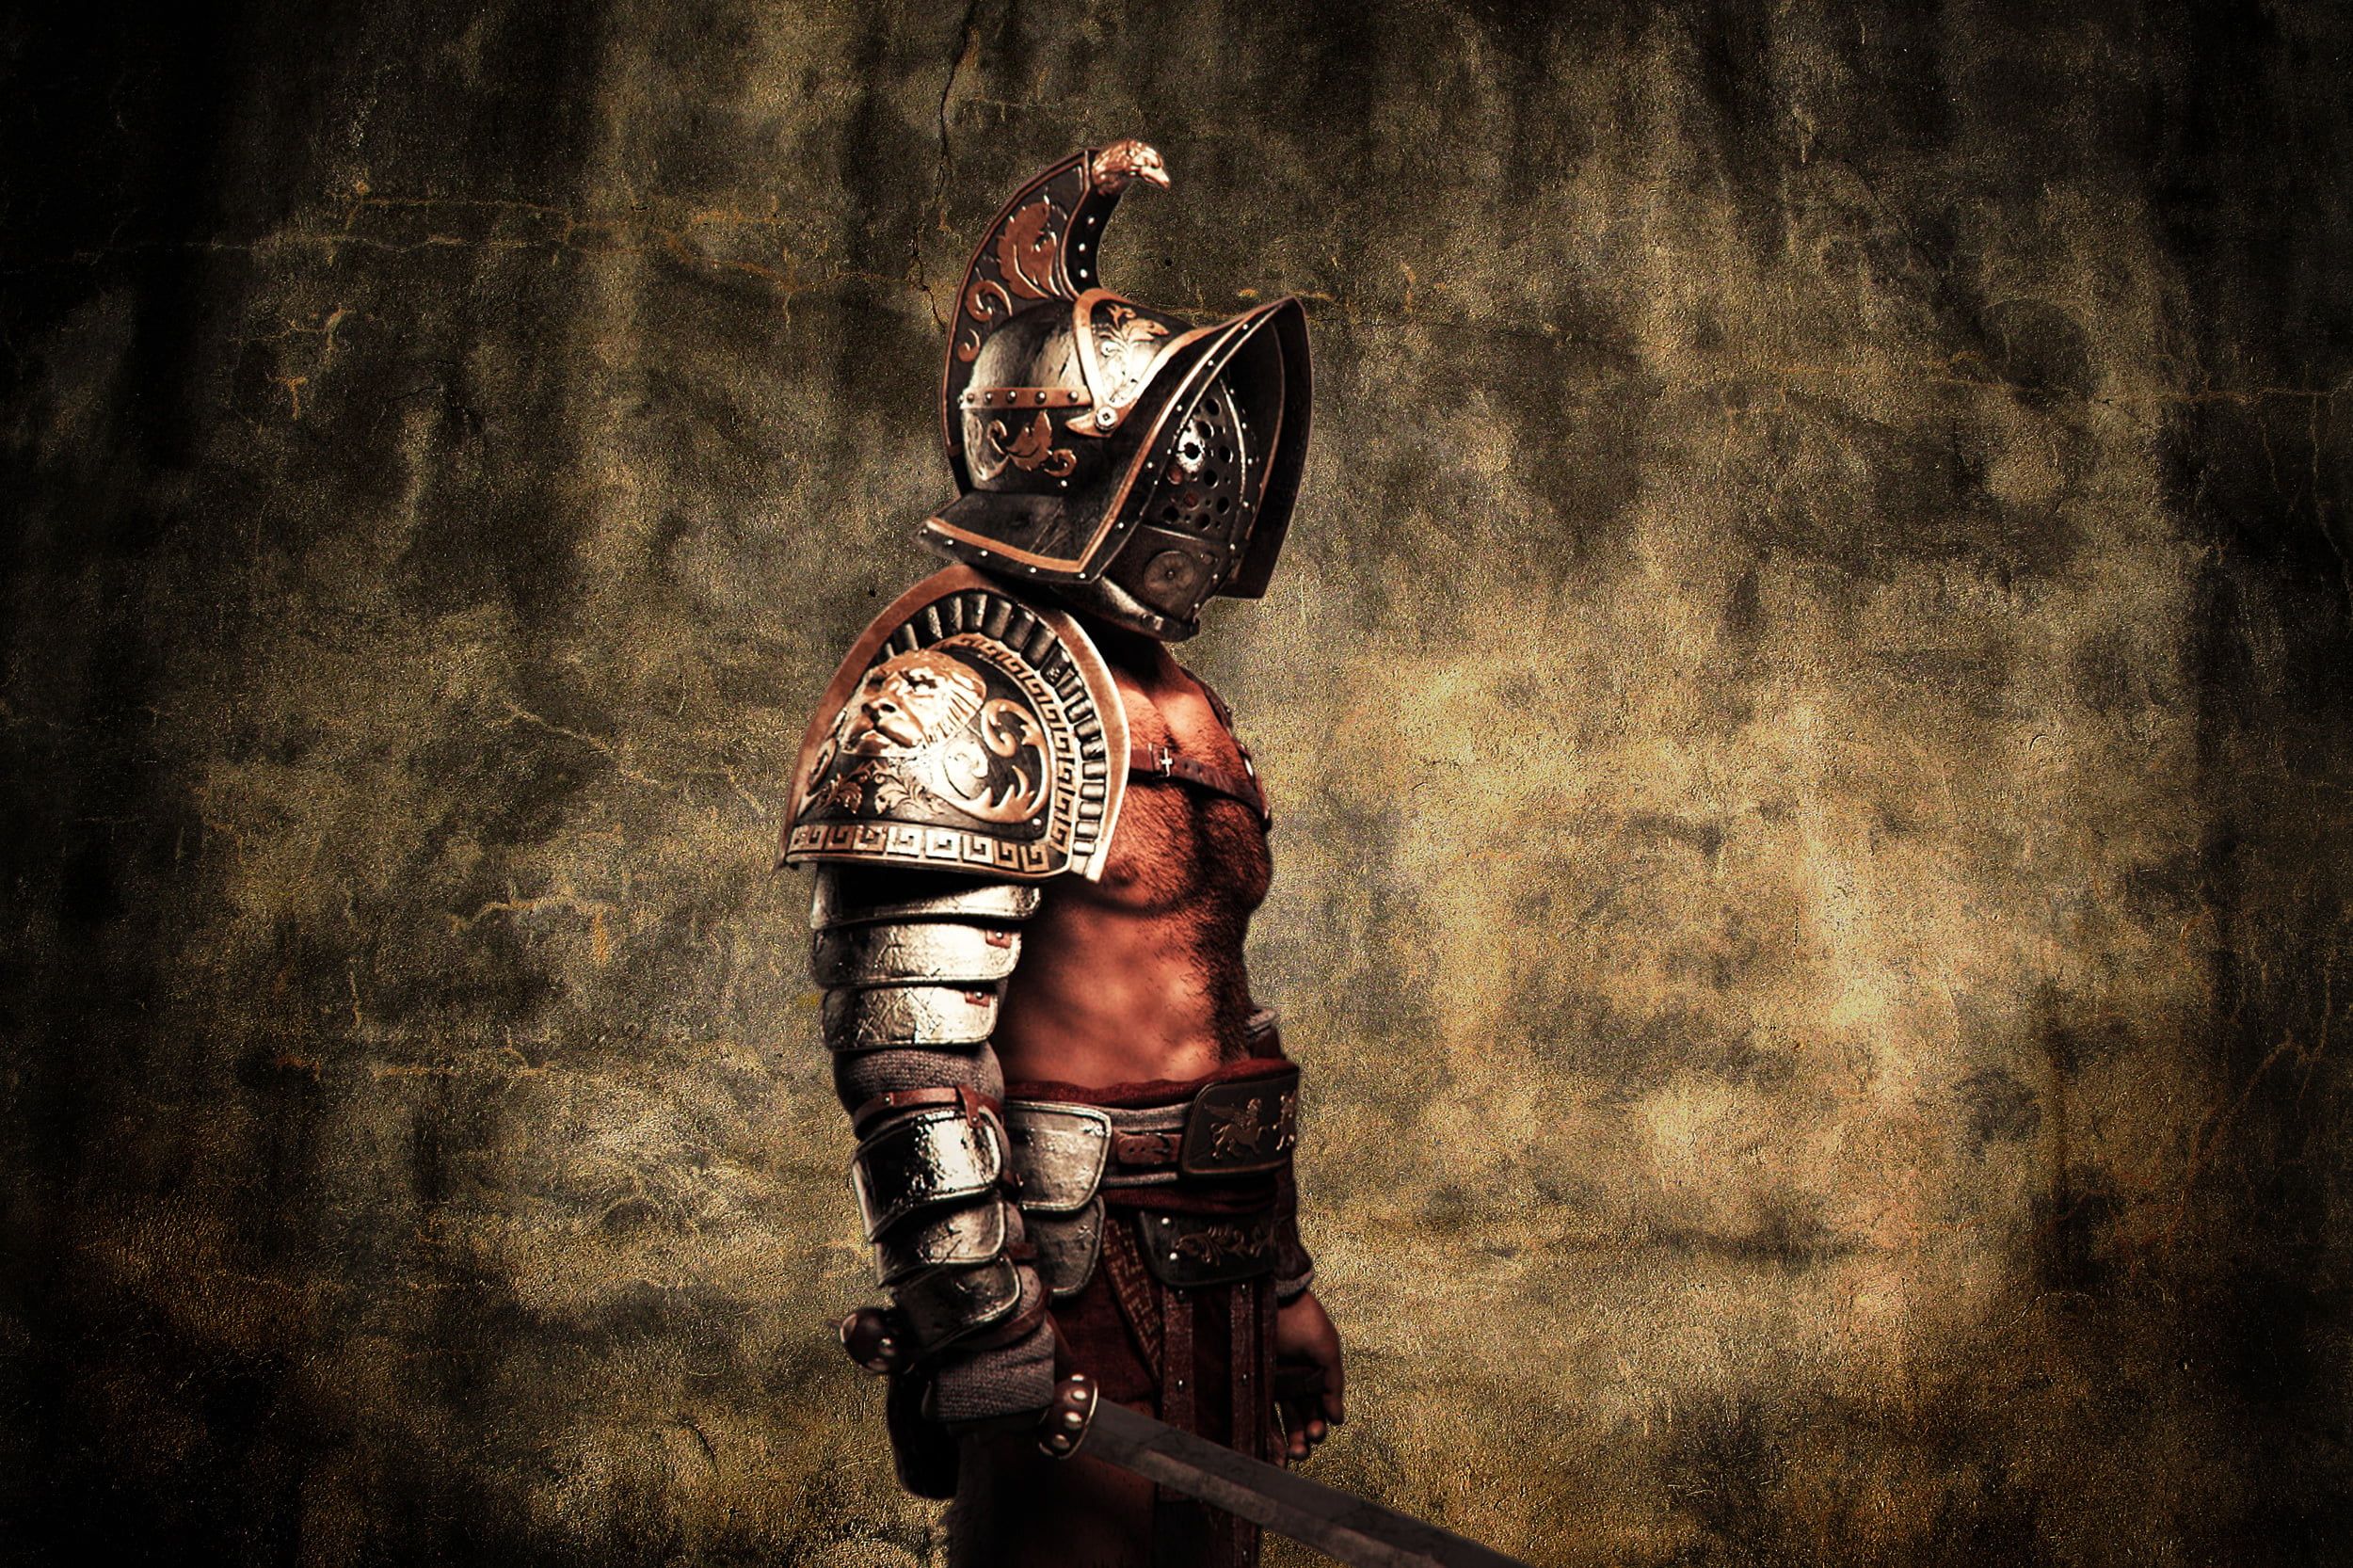 Gladiator Helmet Wallpapers